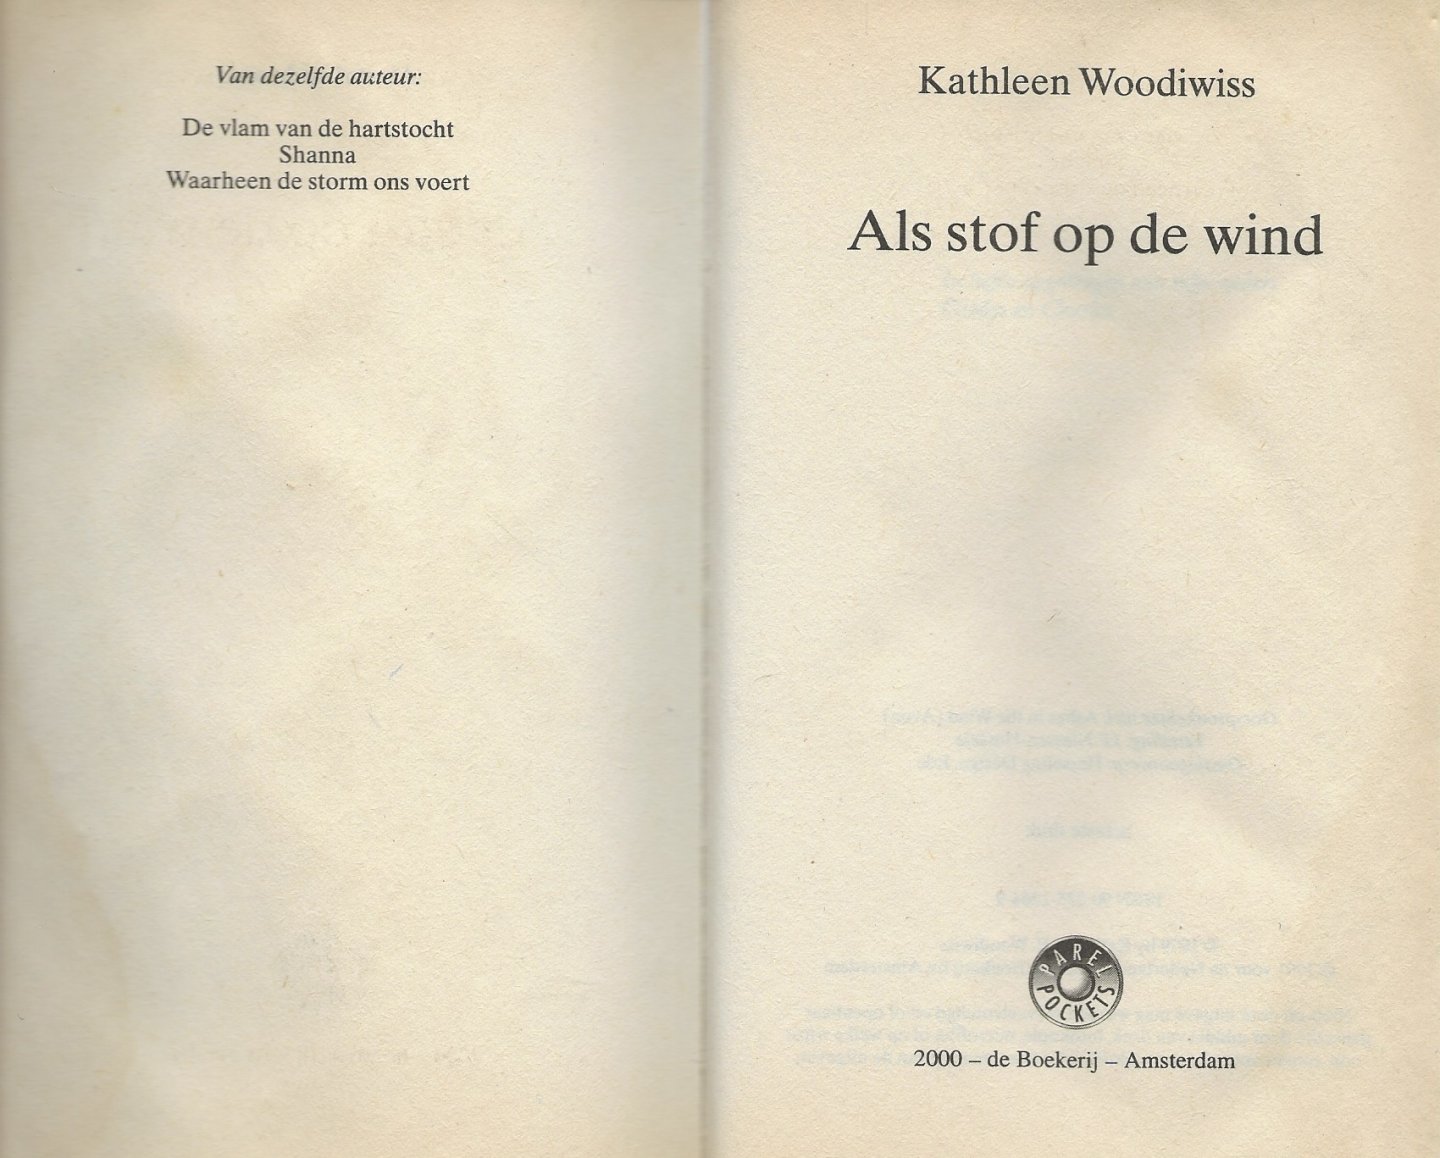 Woodiwiss E. Kathleen  Vertaling J.F. Niessen-Hossele - Als stof op de wind